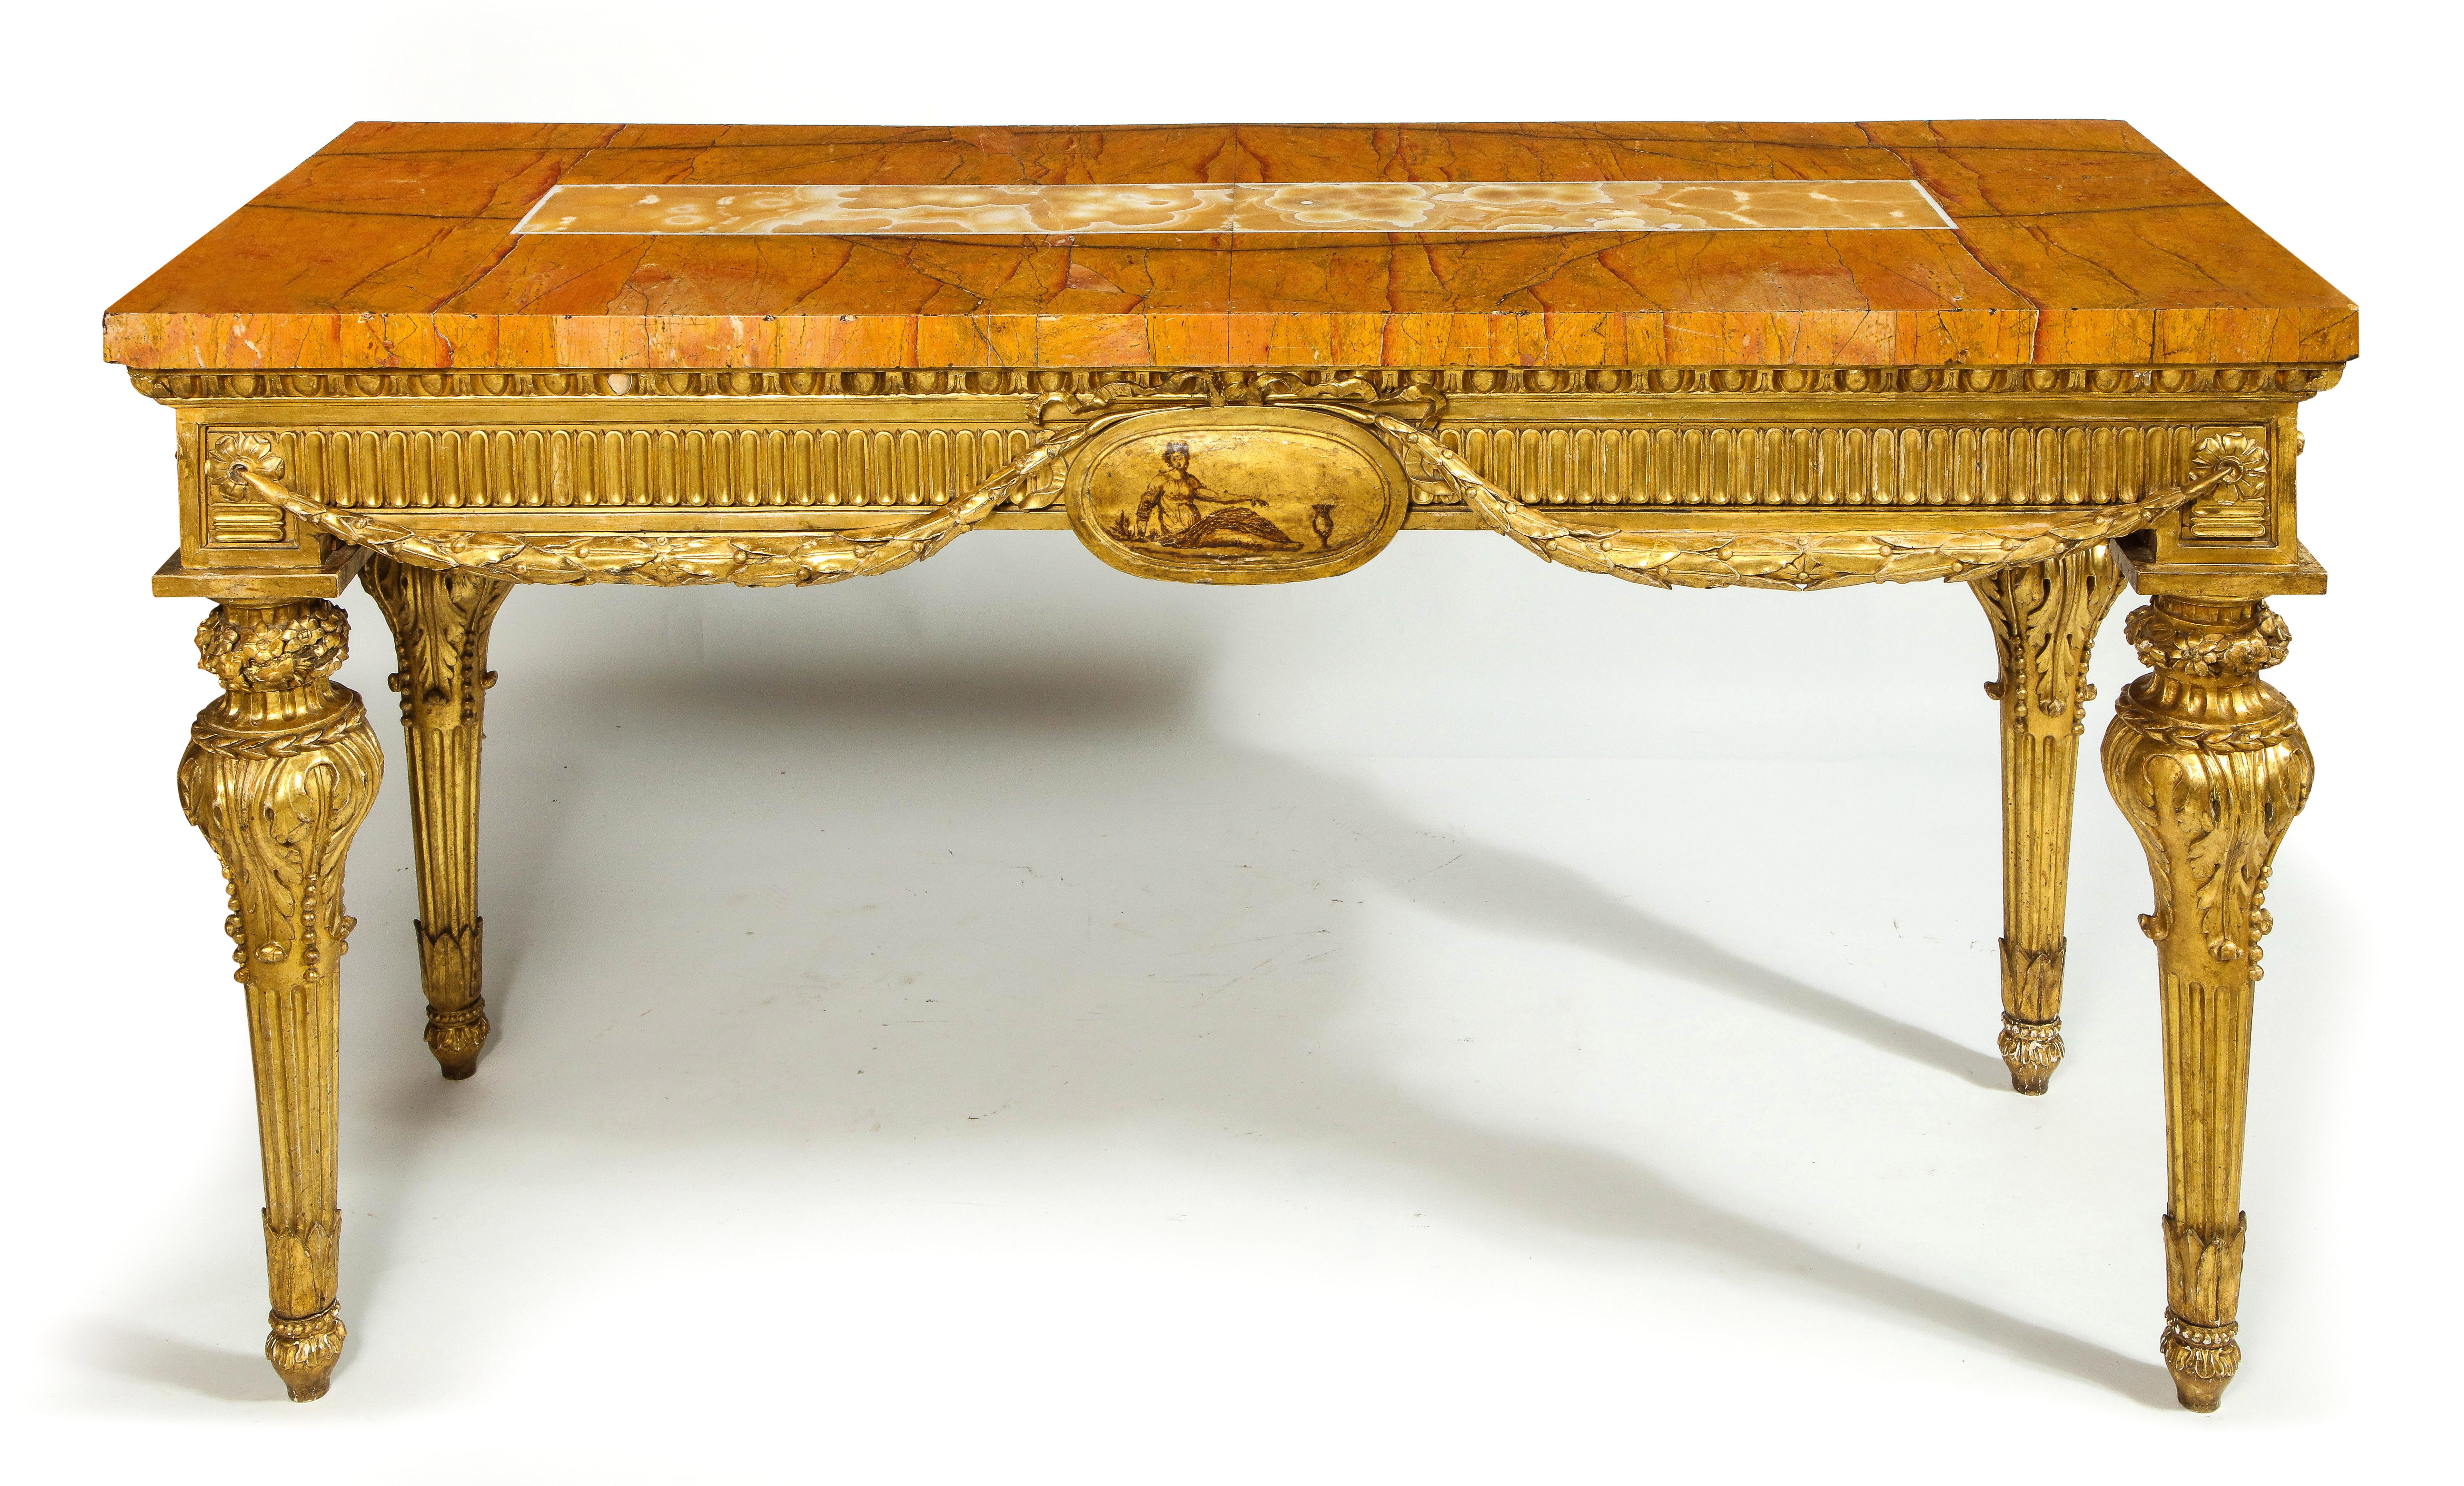 Ein fabelhaftes und beeindruckendes Paar norditalienischer Vergoldungstische aus dem 18. Jahrhundert mit furnierten Pietra-Dura-Marmorplatten. Diese fabelhaften Tische aus vergoldetem Holz sind mit beeindruckender Handwerkskunst handgeschnitzt und